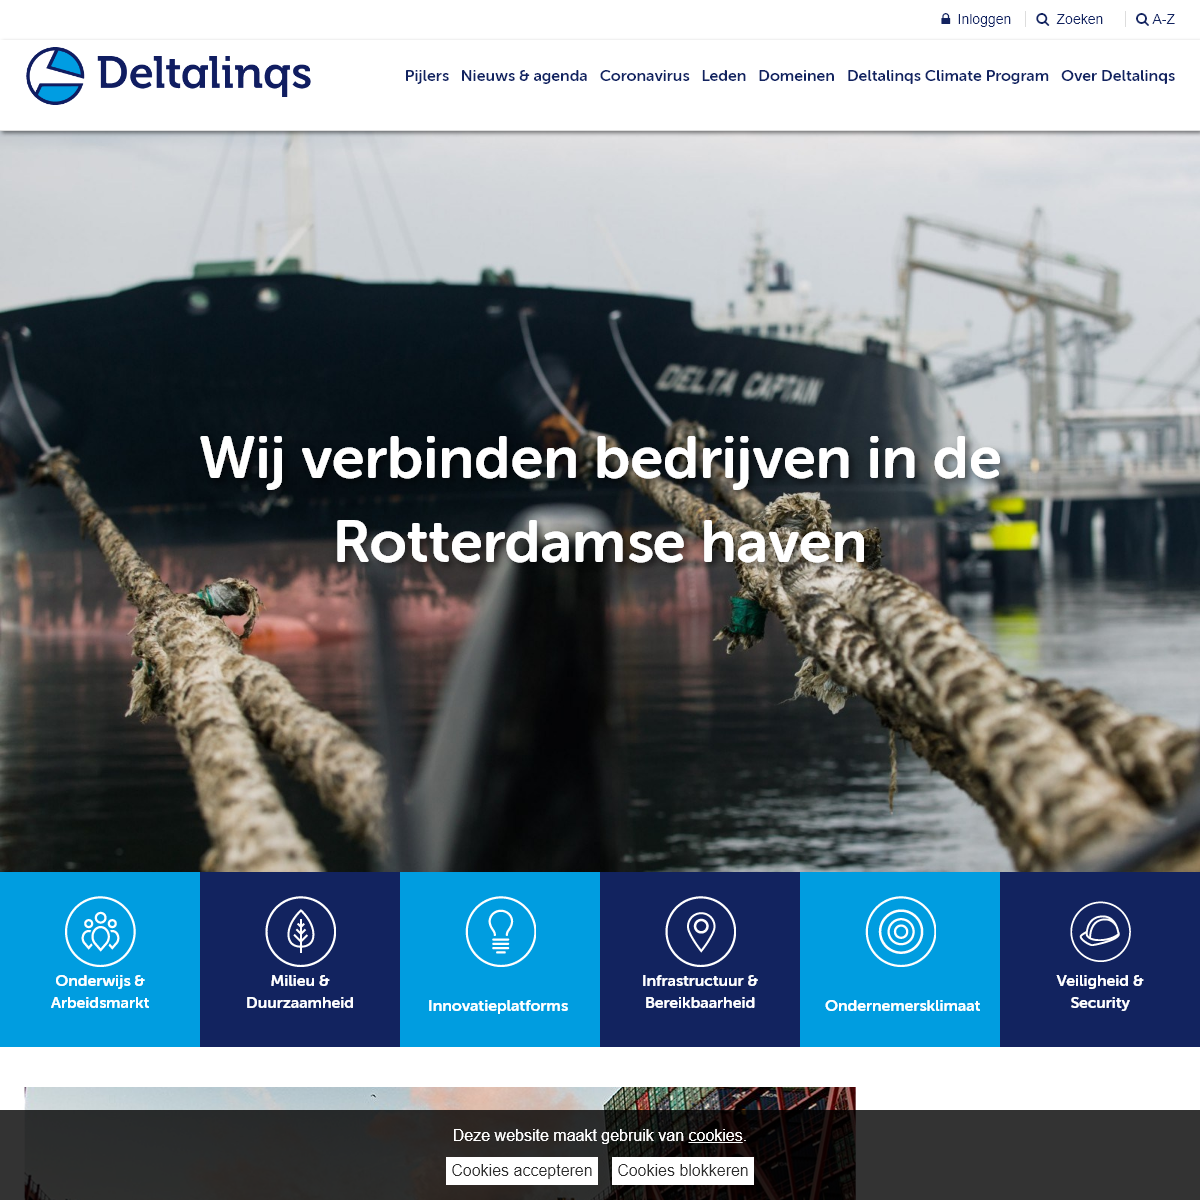 A complete backup of deltalinqs.nl